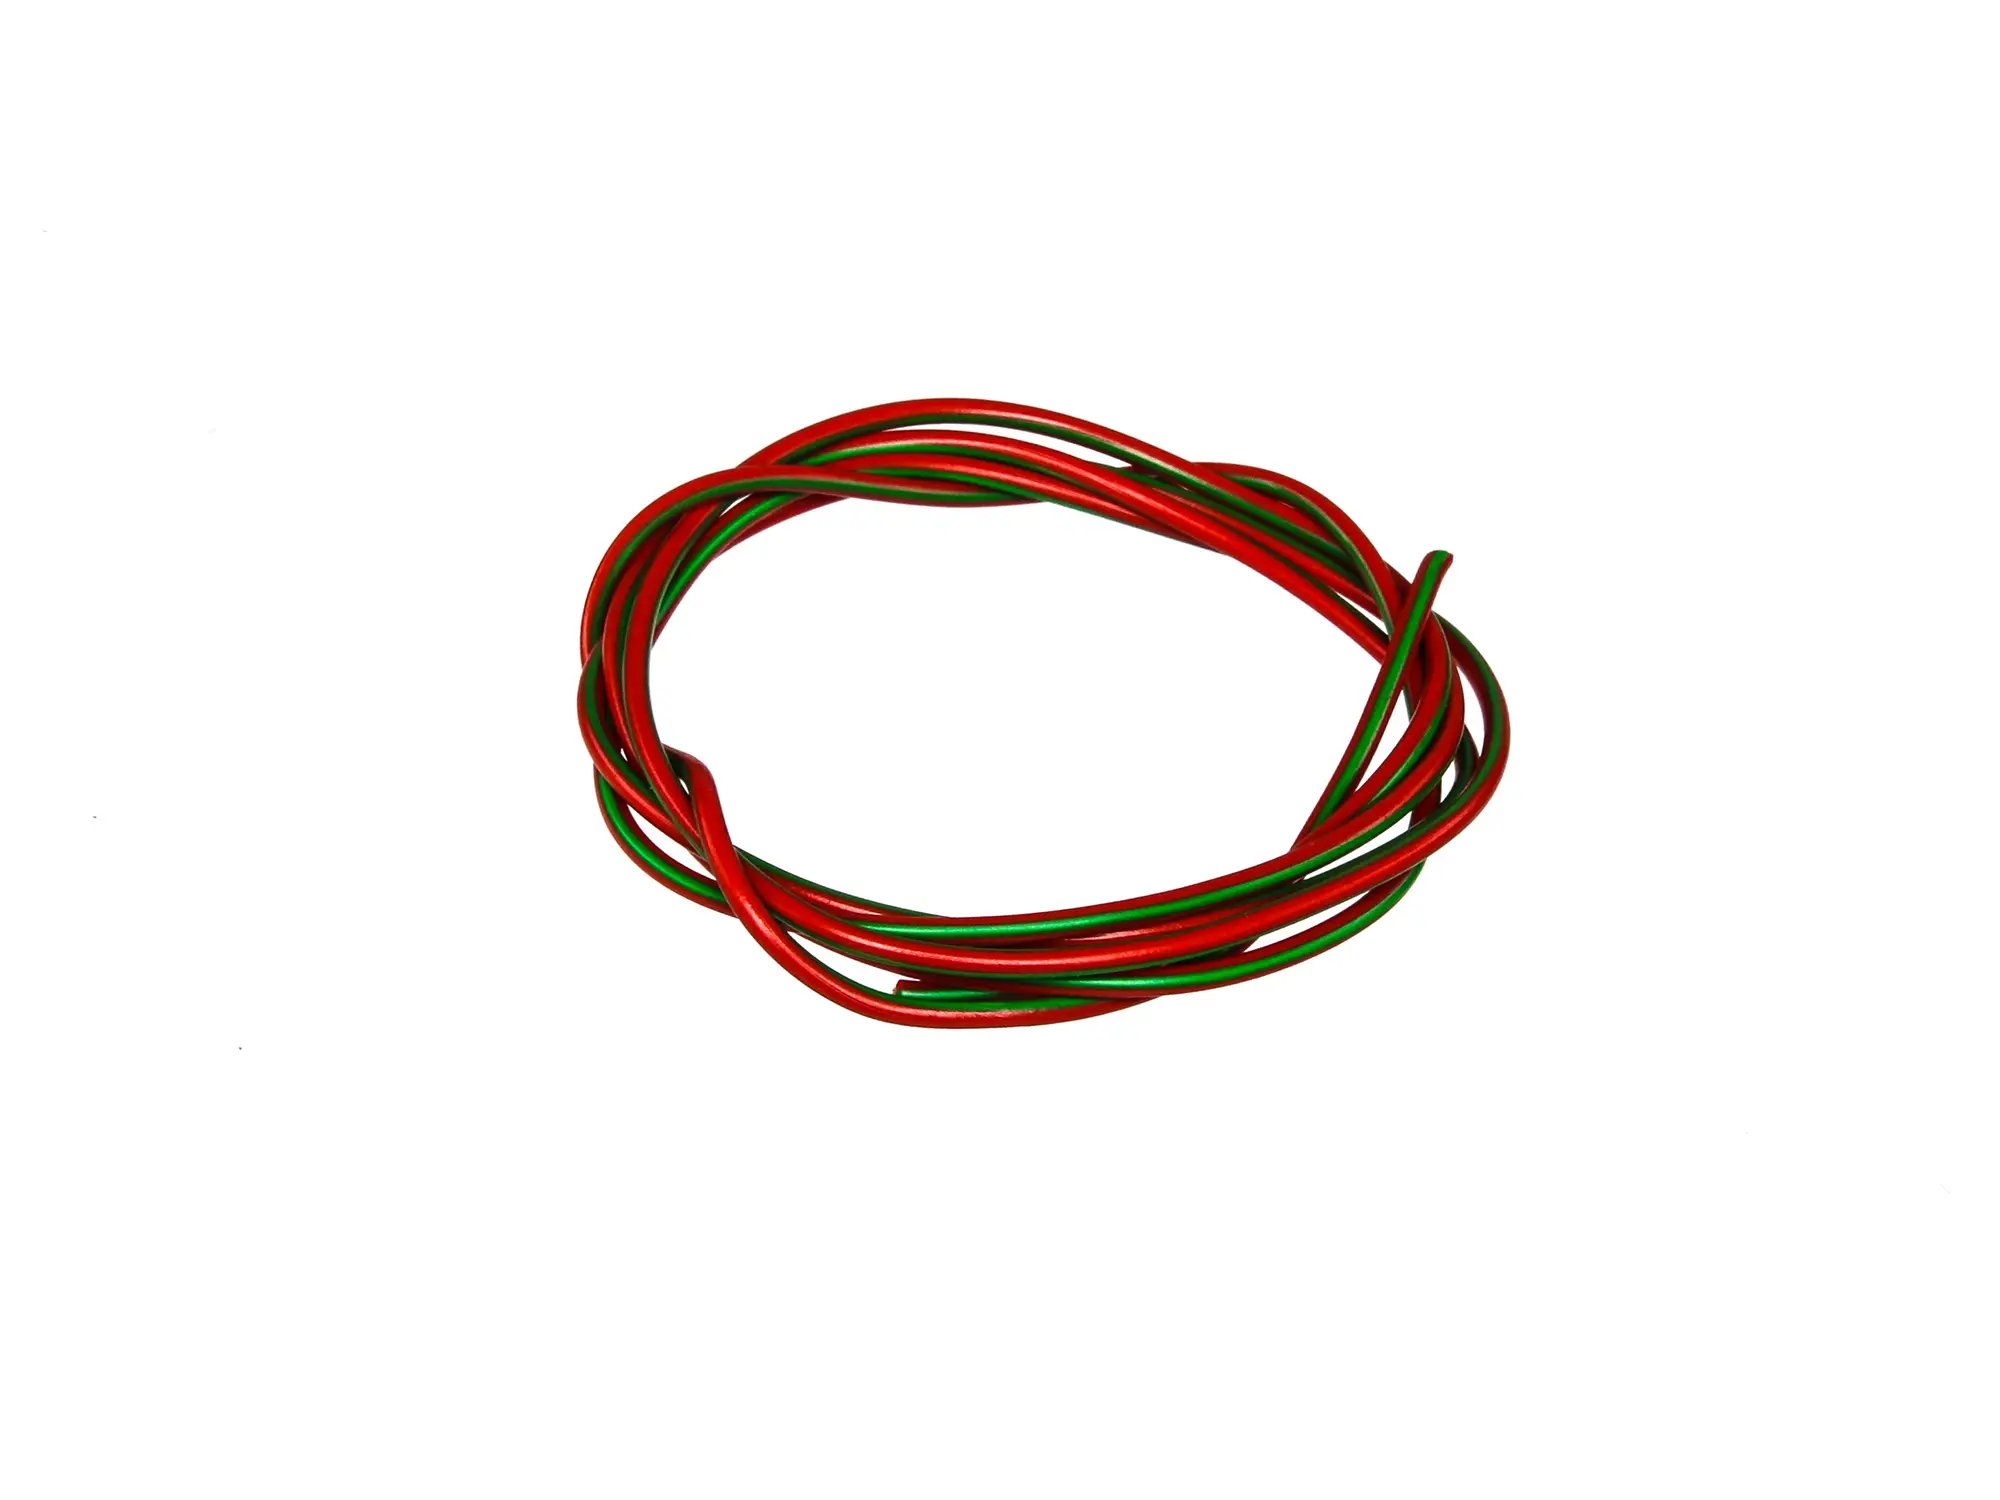 Kabel - Rot/Grün 0,50mm² Fahrzeugleitung - 1m, Art.-Nr.: 10001777 - Bild 1